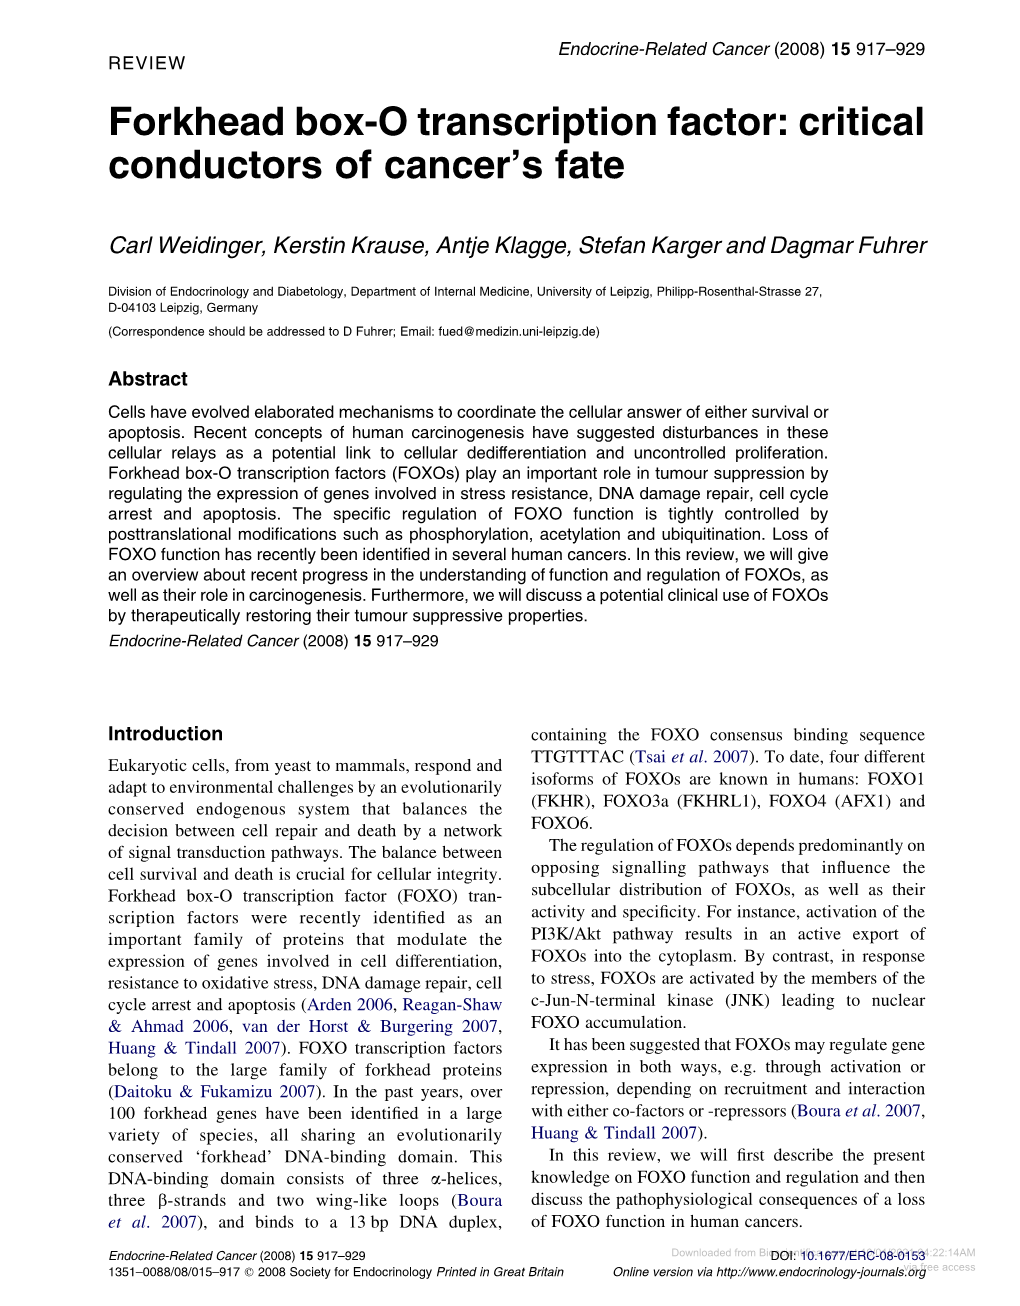 Forkhead Box-O Transcription Factor: Critical Conductors of Cancer’S Fate